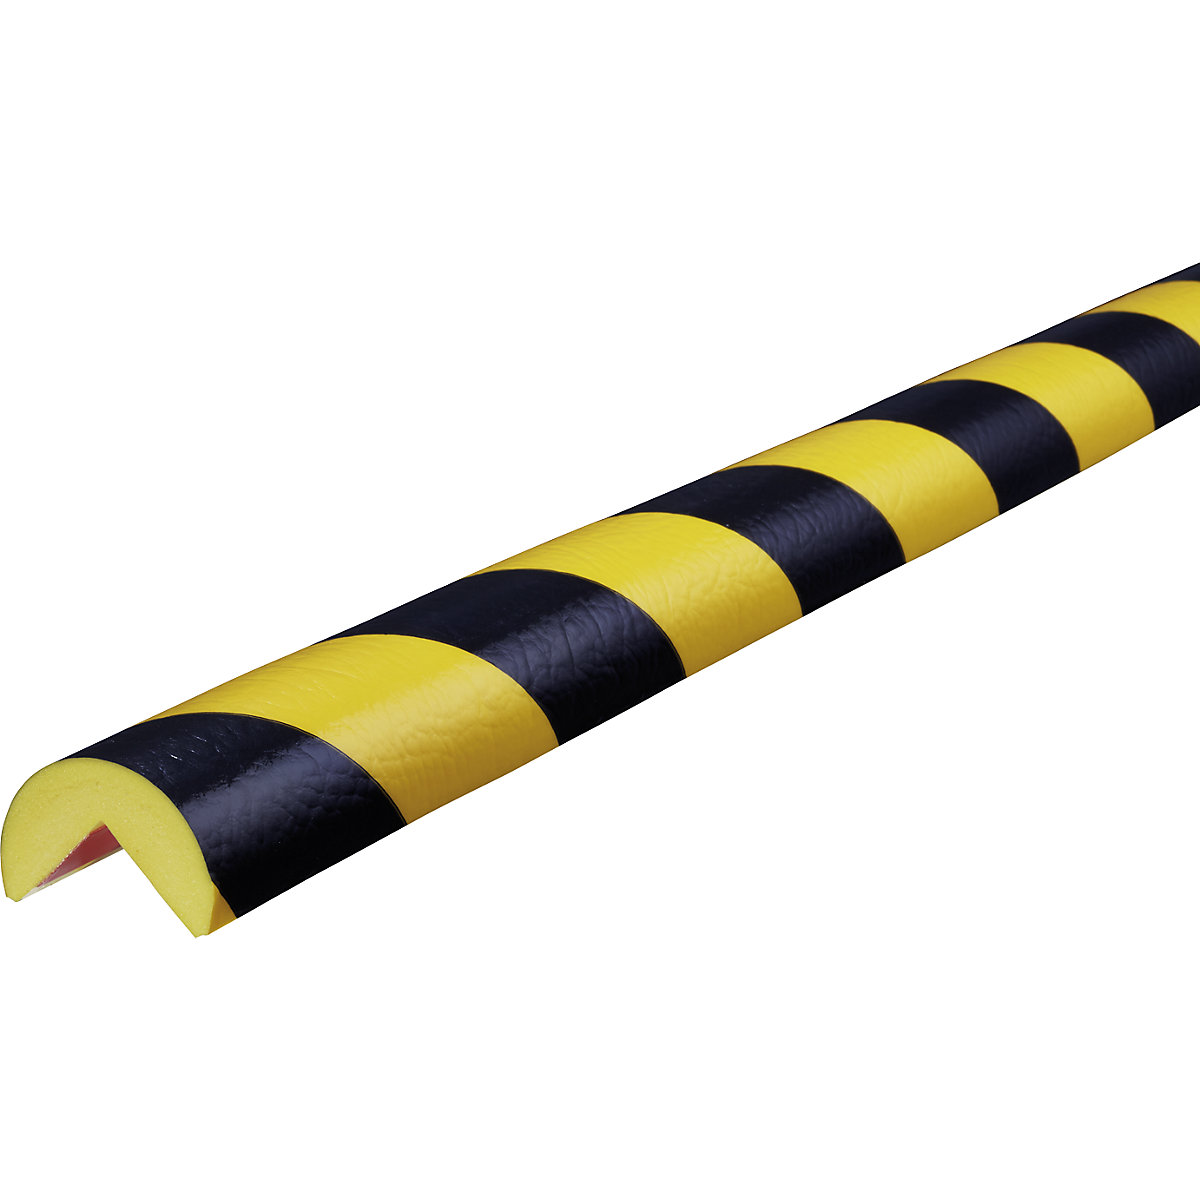 Knuffi®-hoekbescherming – SHG, type A, afmetingen individueel, per str. m, zwart/geel-13